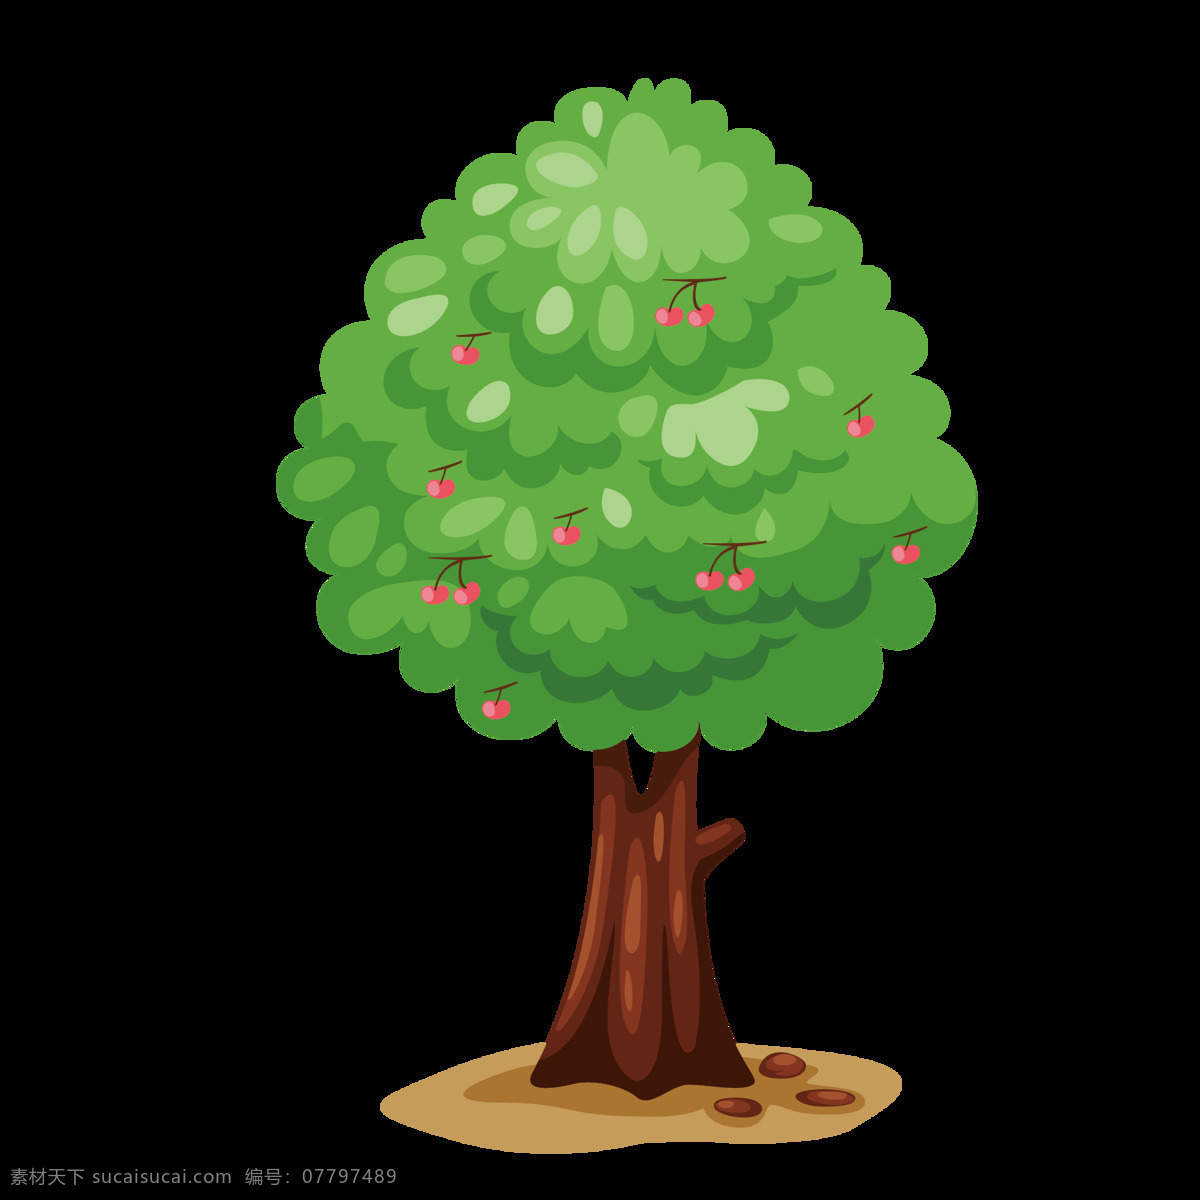 卡通装饰树木 树木 植物 苹果树 装饰 简约